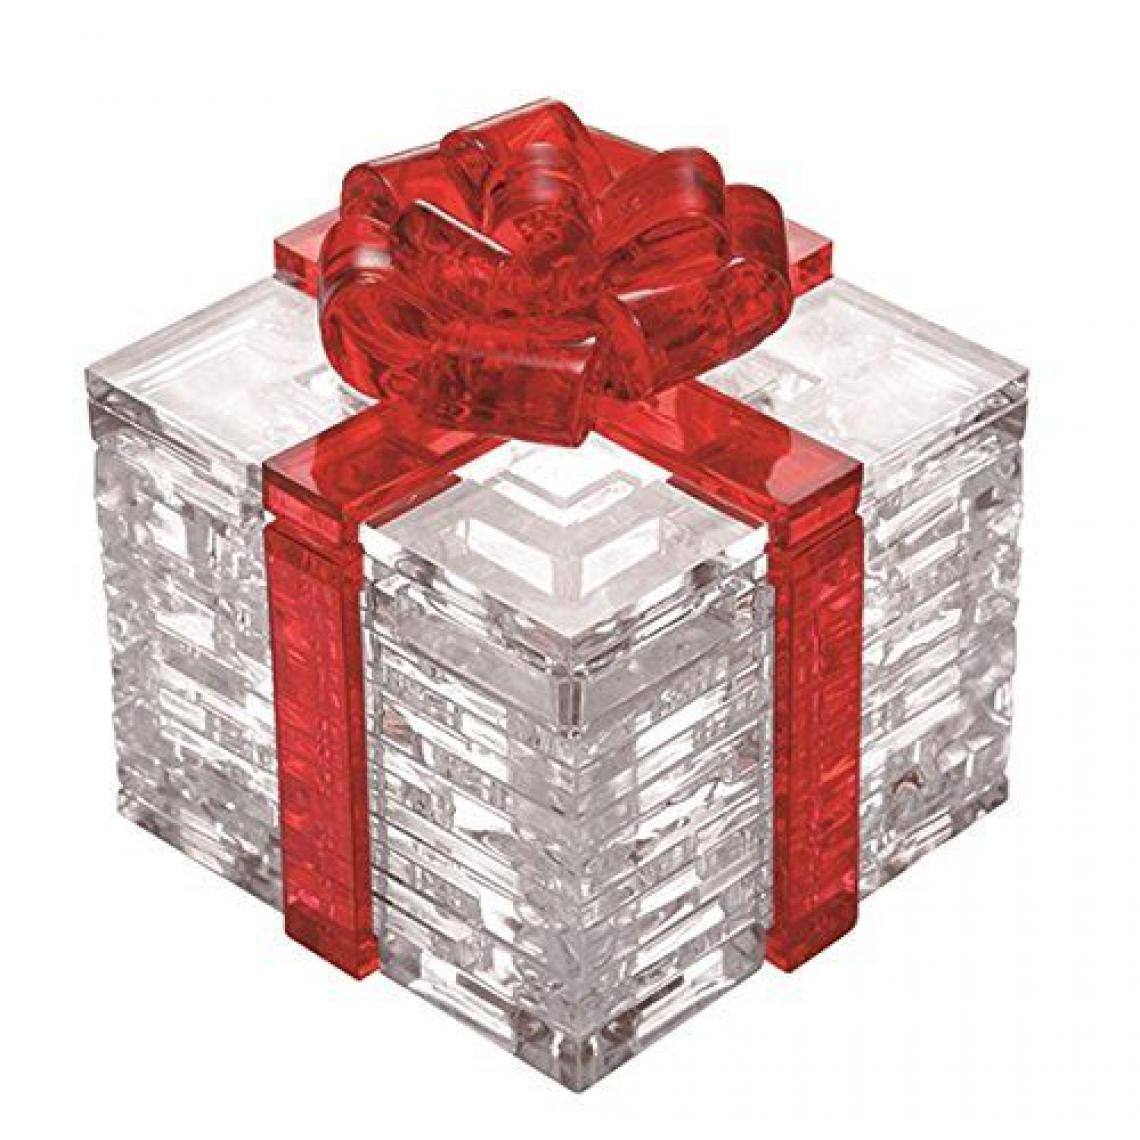 Inconnu - HCM - 59136 - Crystal Puzzle - Cadeau Boîte - 38 Pièces - Animaux